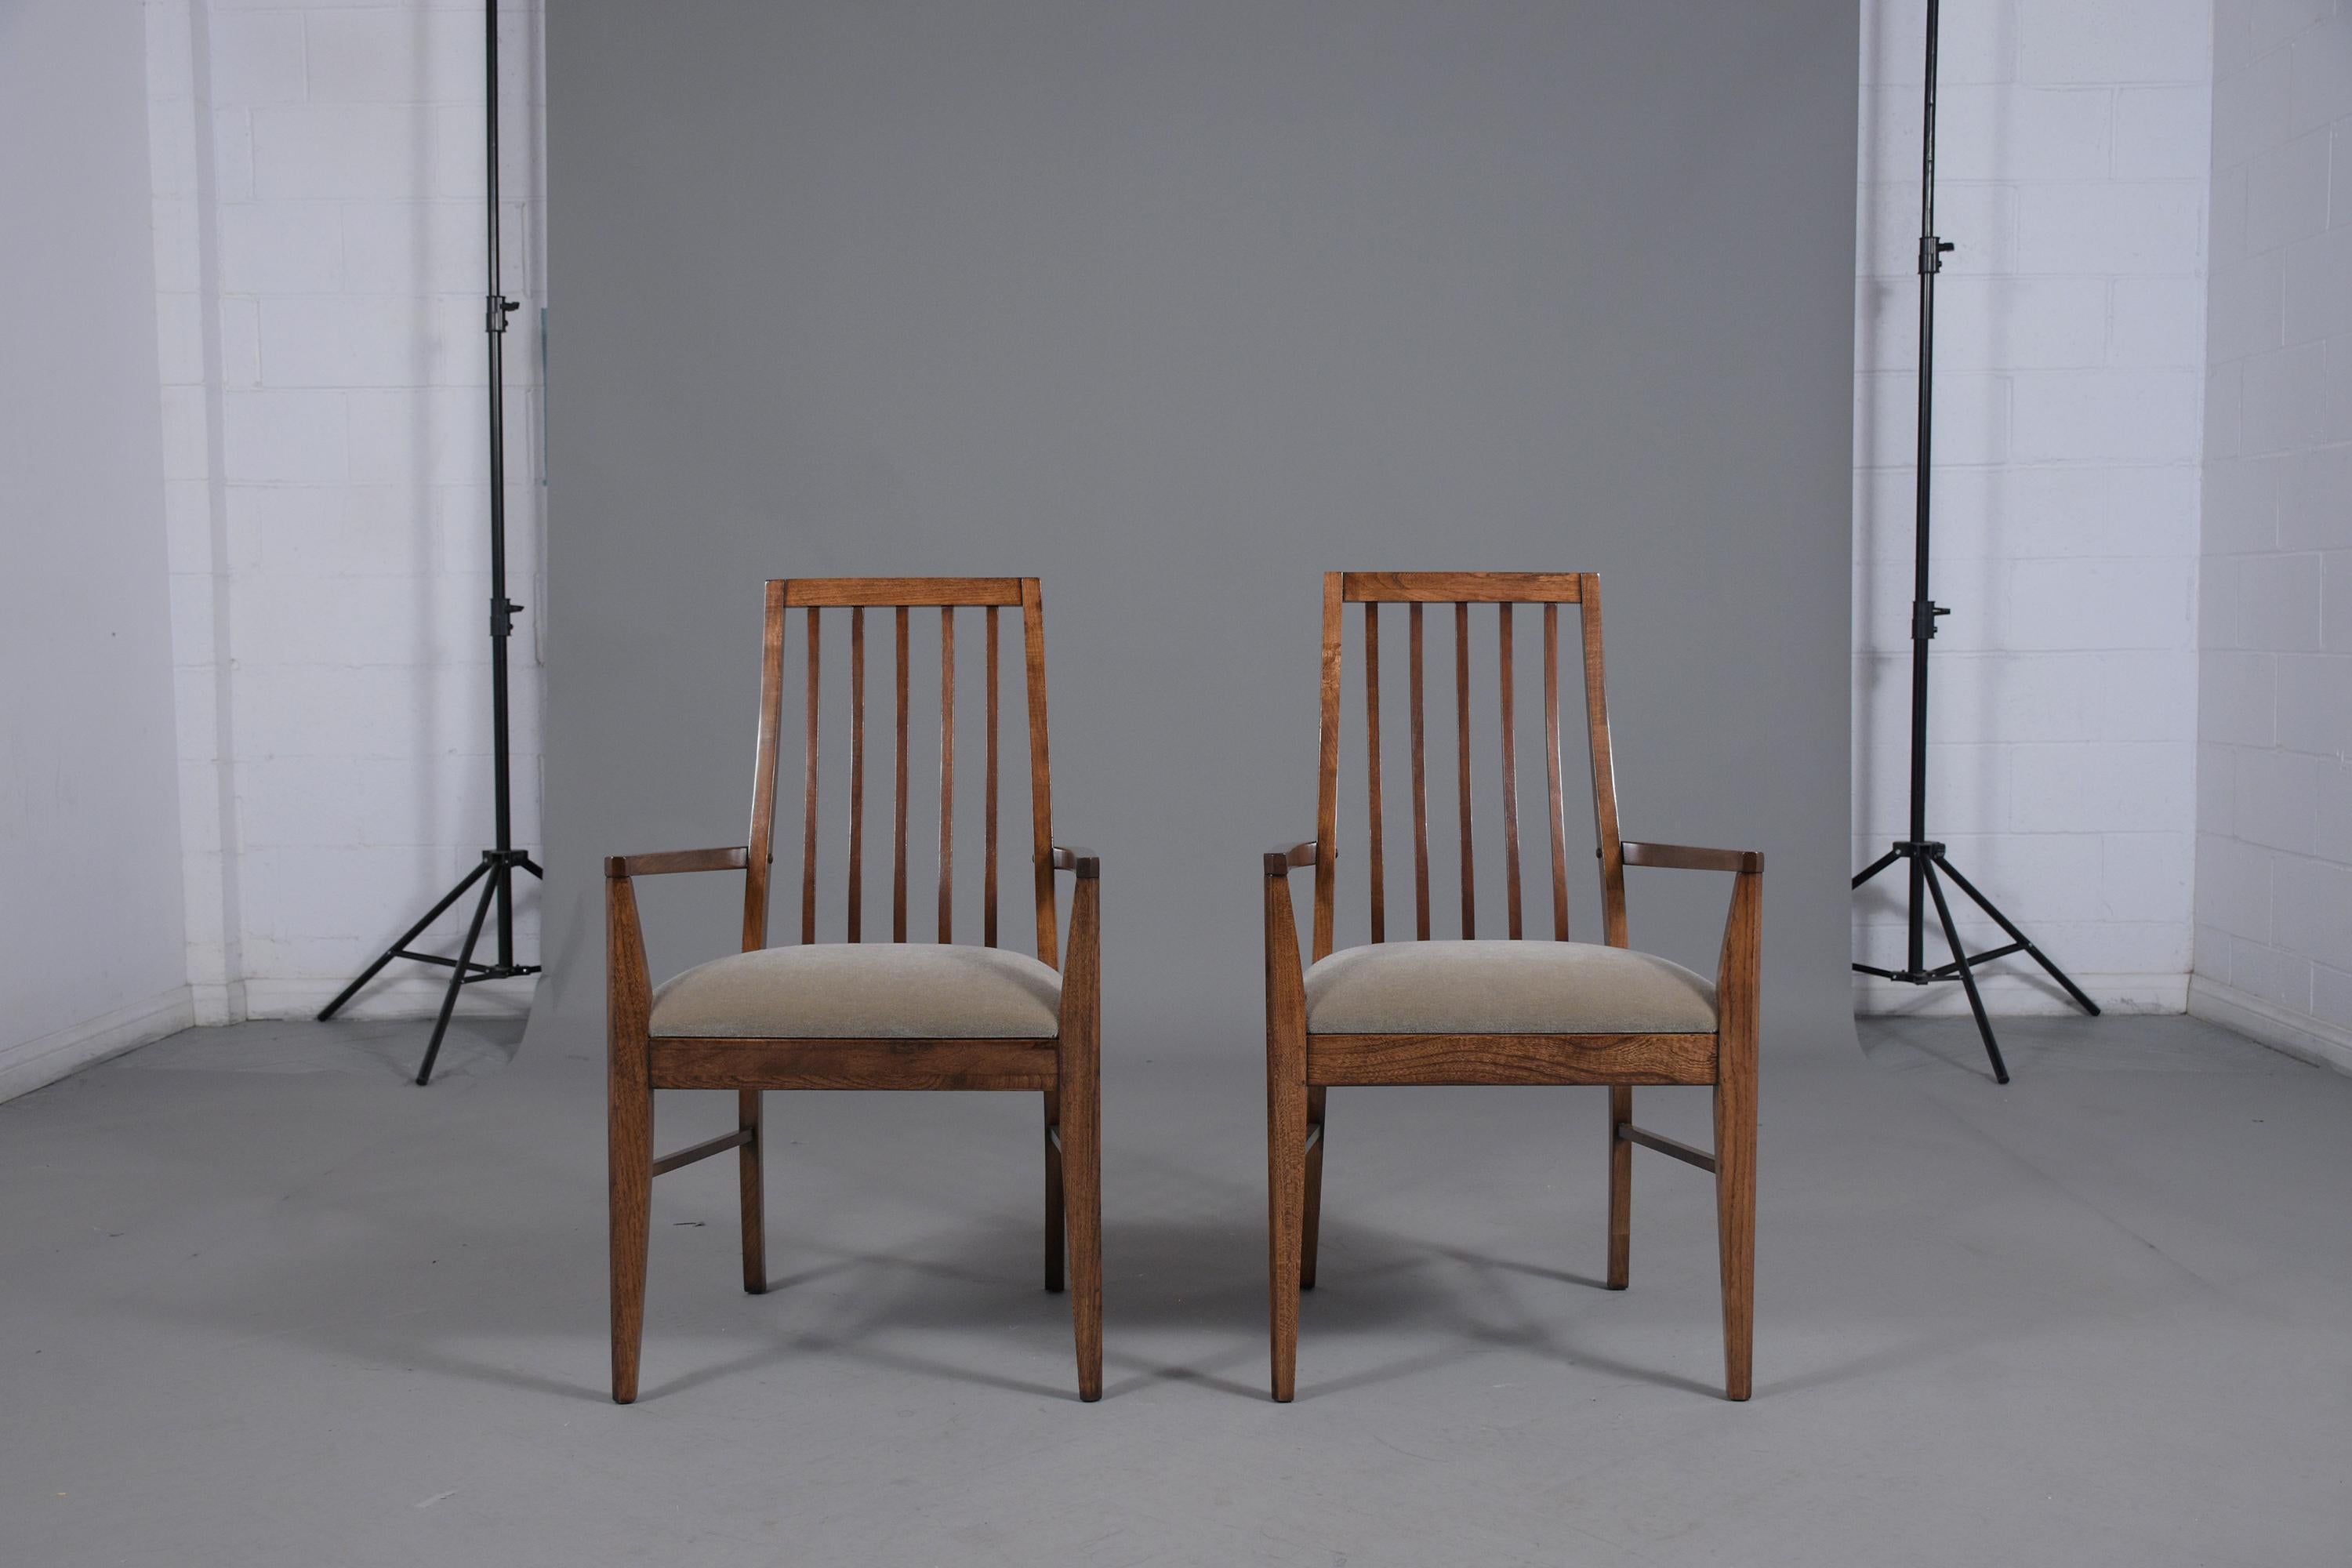 Versetzen Sie sich zurück in die 1960er Jahre mit unserem Vintage-Sesselpaar aus der Mitte des Jahrhunderts, das das berühmte Design und die Handwerkskunst dieser Epoche perfekt repräsentiert. Diese handgefertigten Stühle aus Nussbaumholz wurden mit